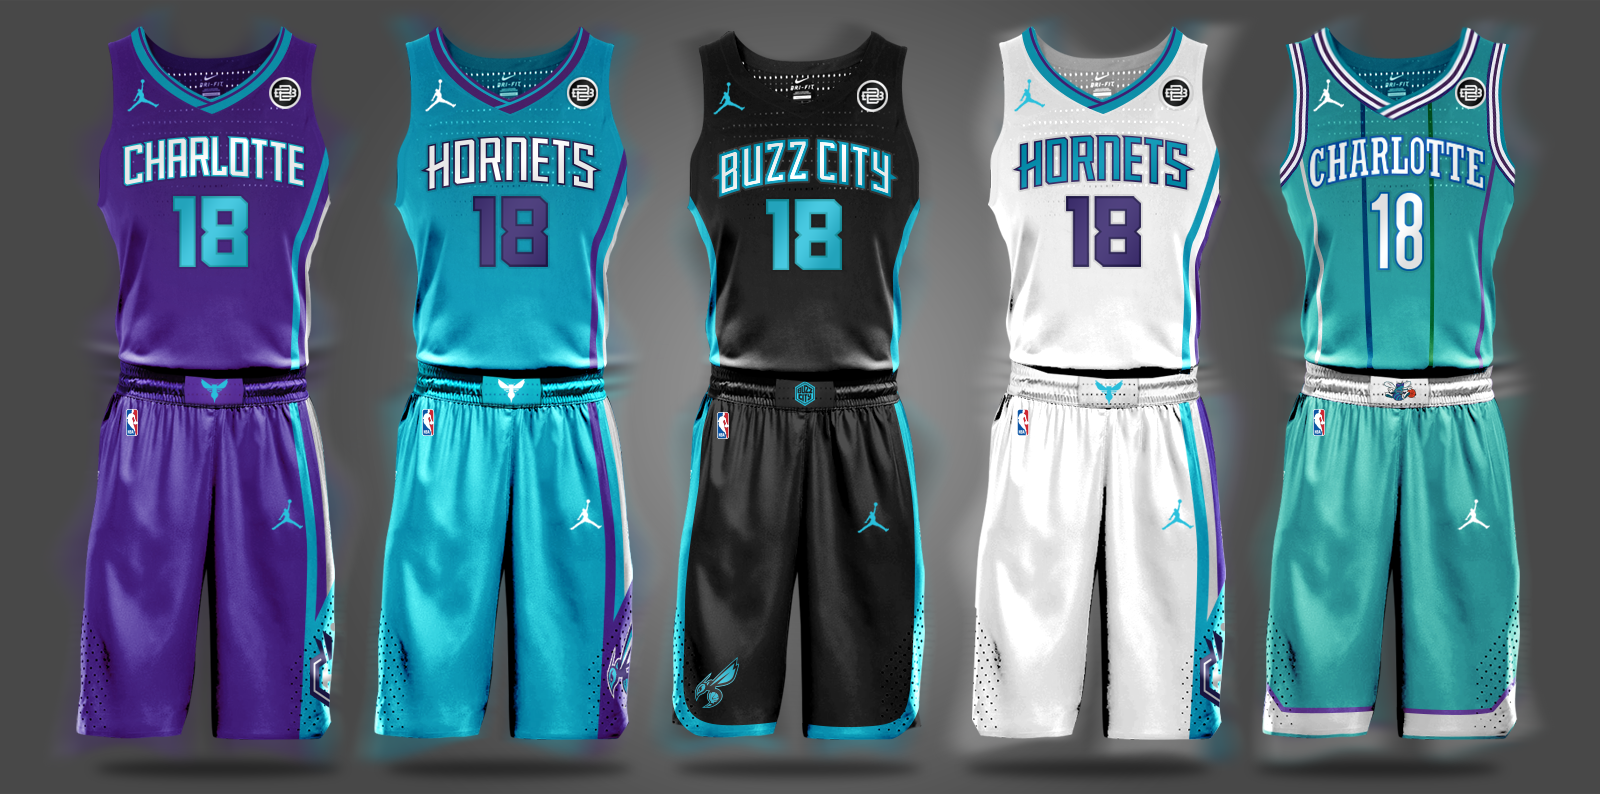 Jordan Charlotte Hornets NBA Uniforms 2017 2018 Season